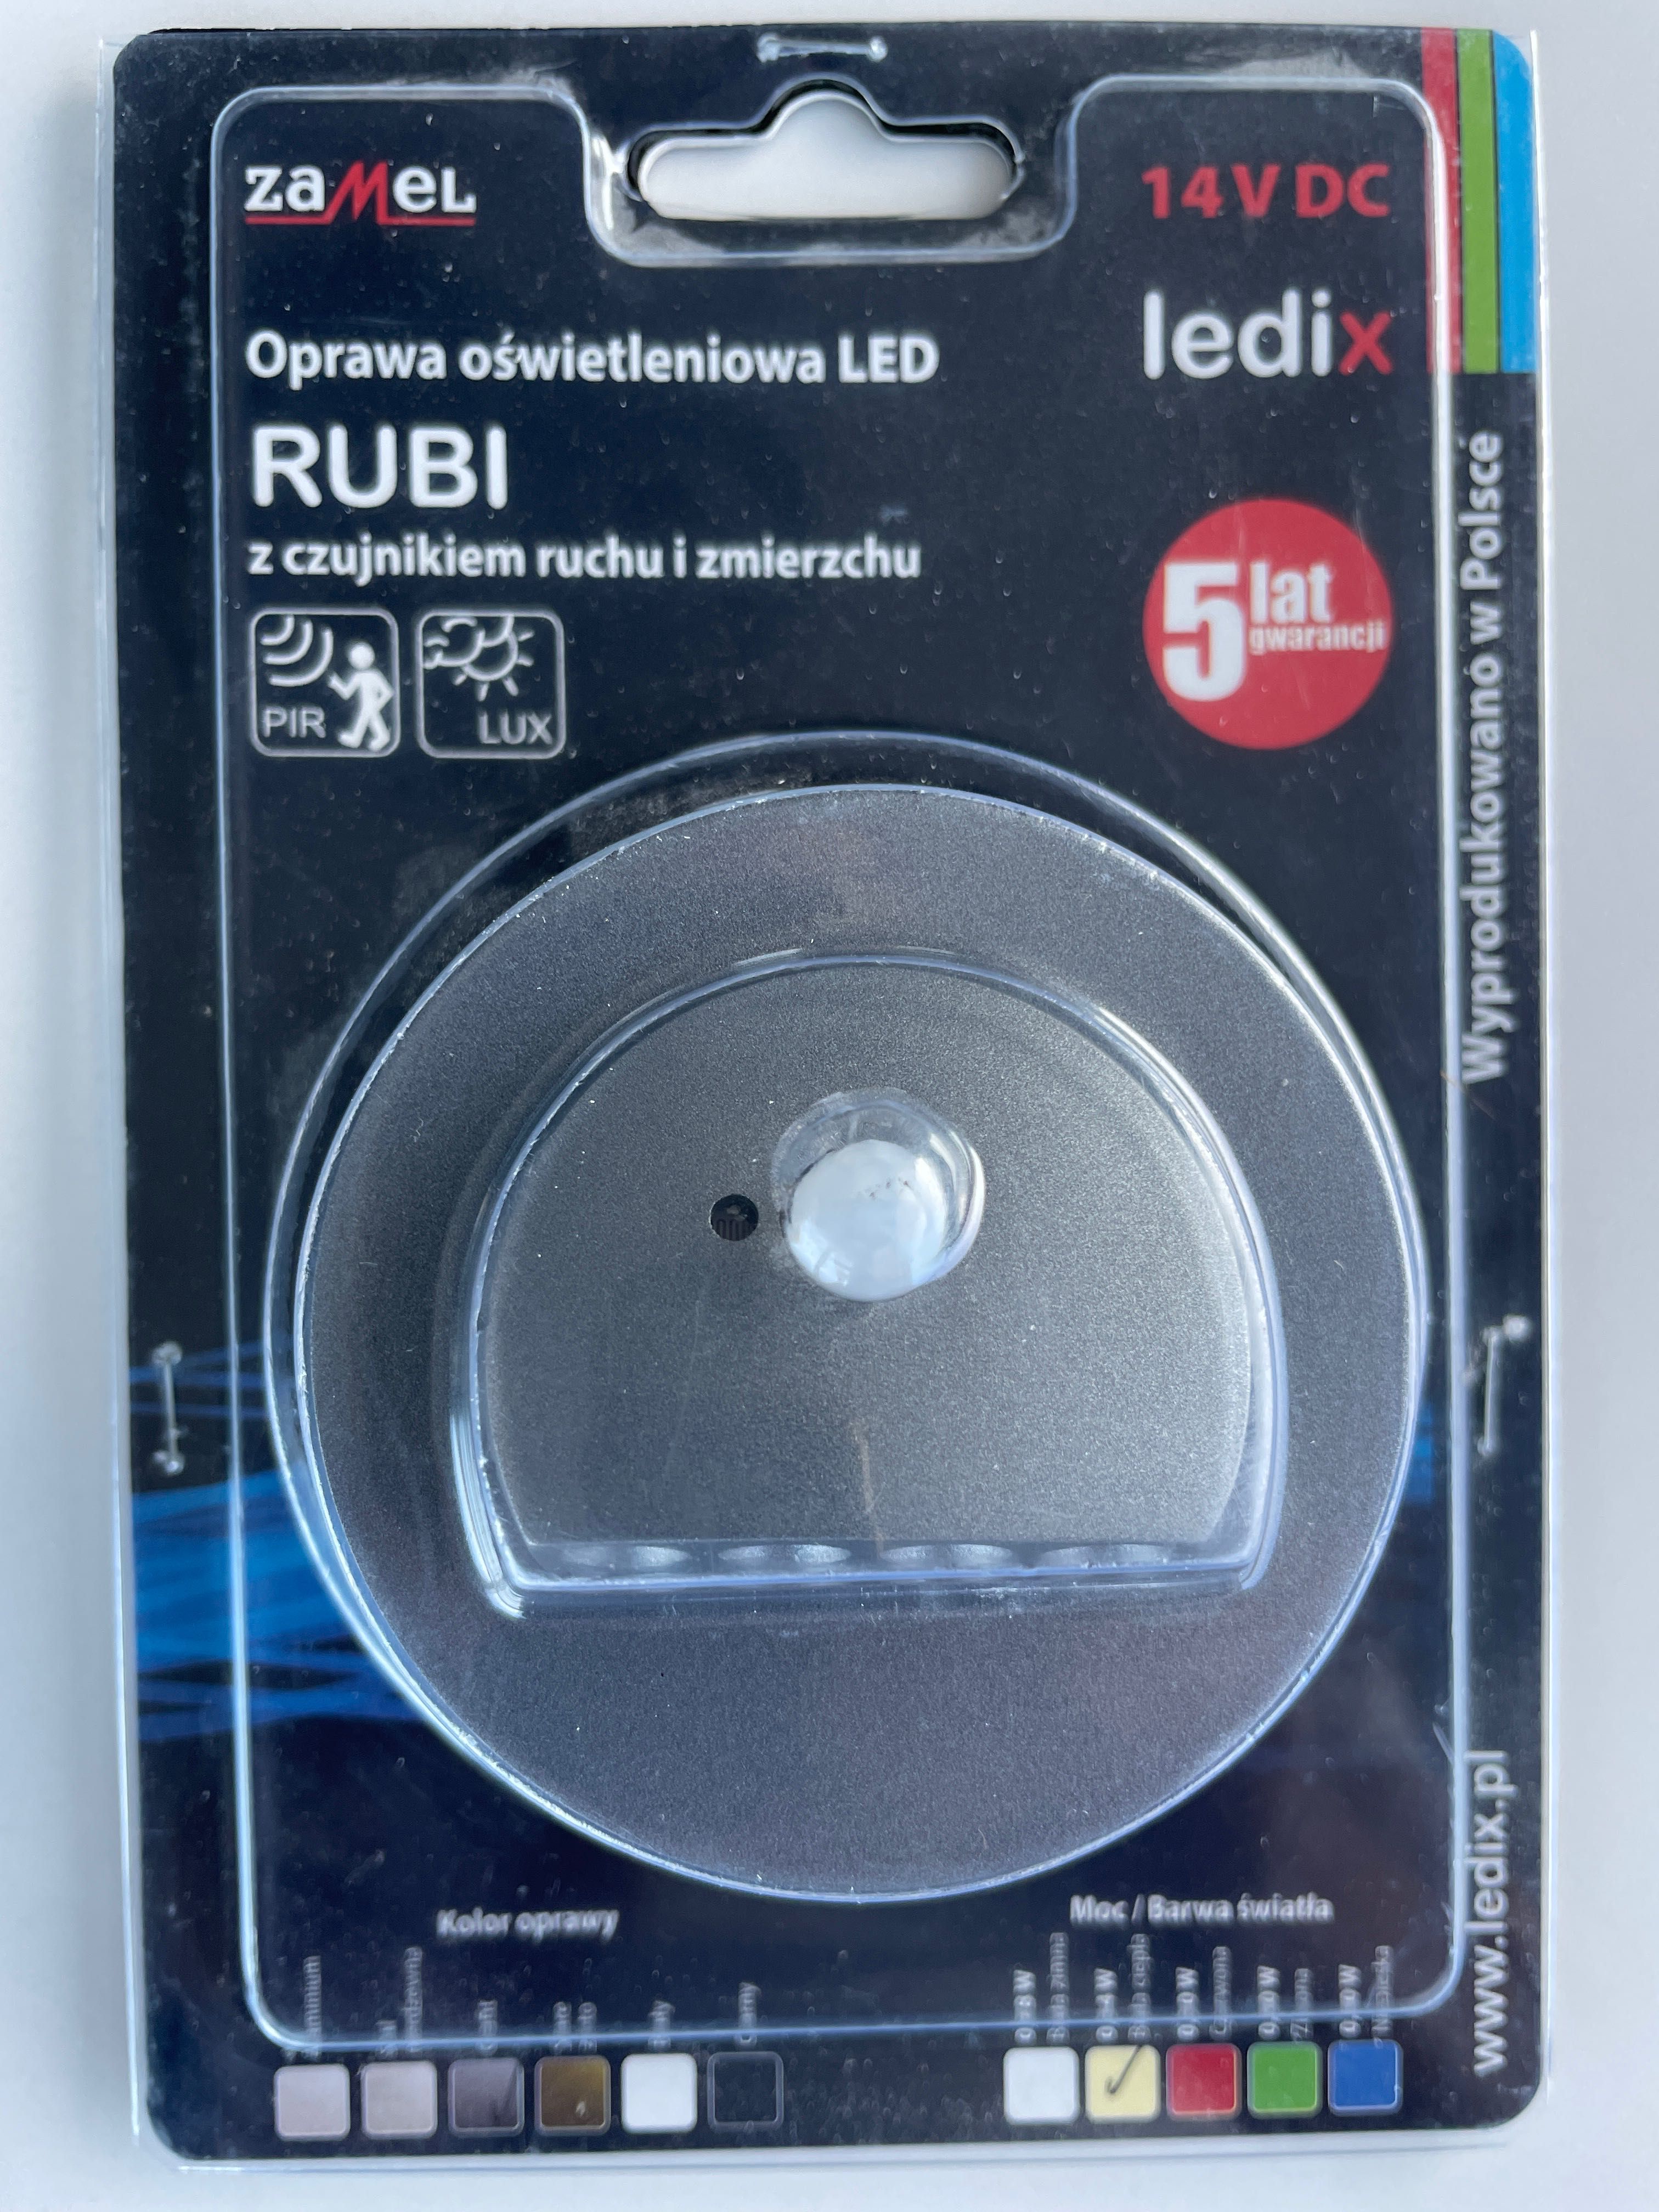 ZAMEL LEDIX Oprawa Schodowa LED RUBI PT 14V DC czujnik ruchu zmierzchu